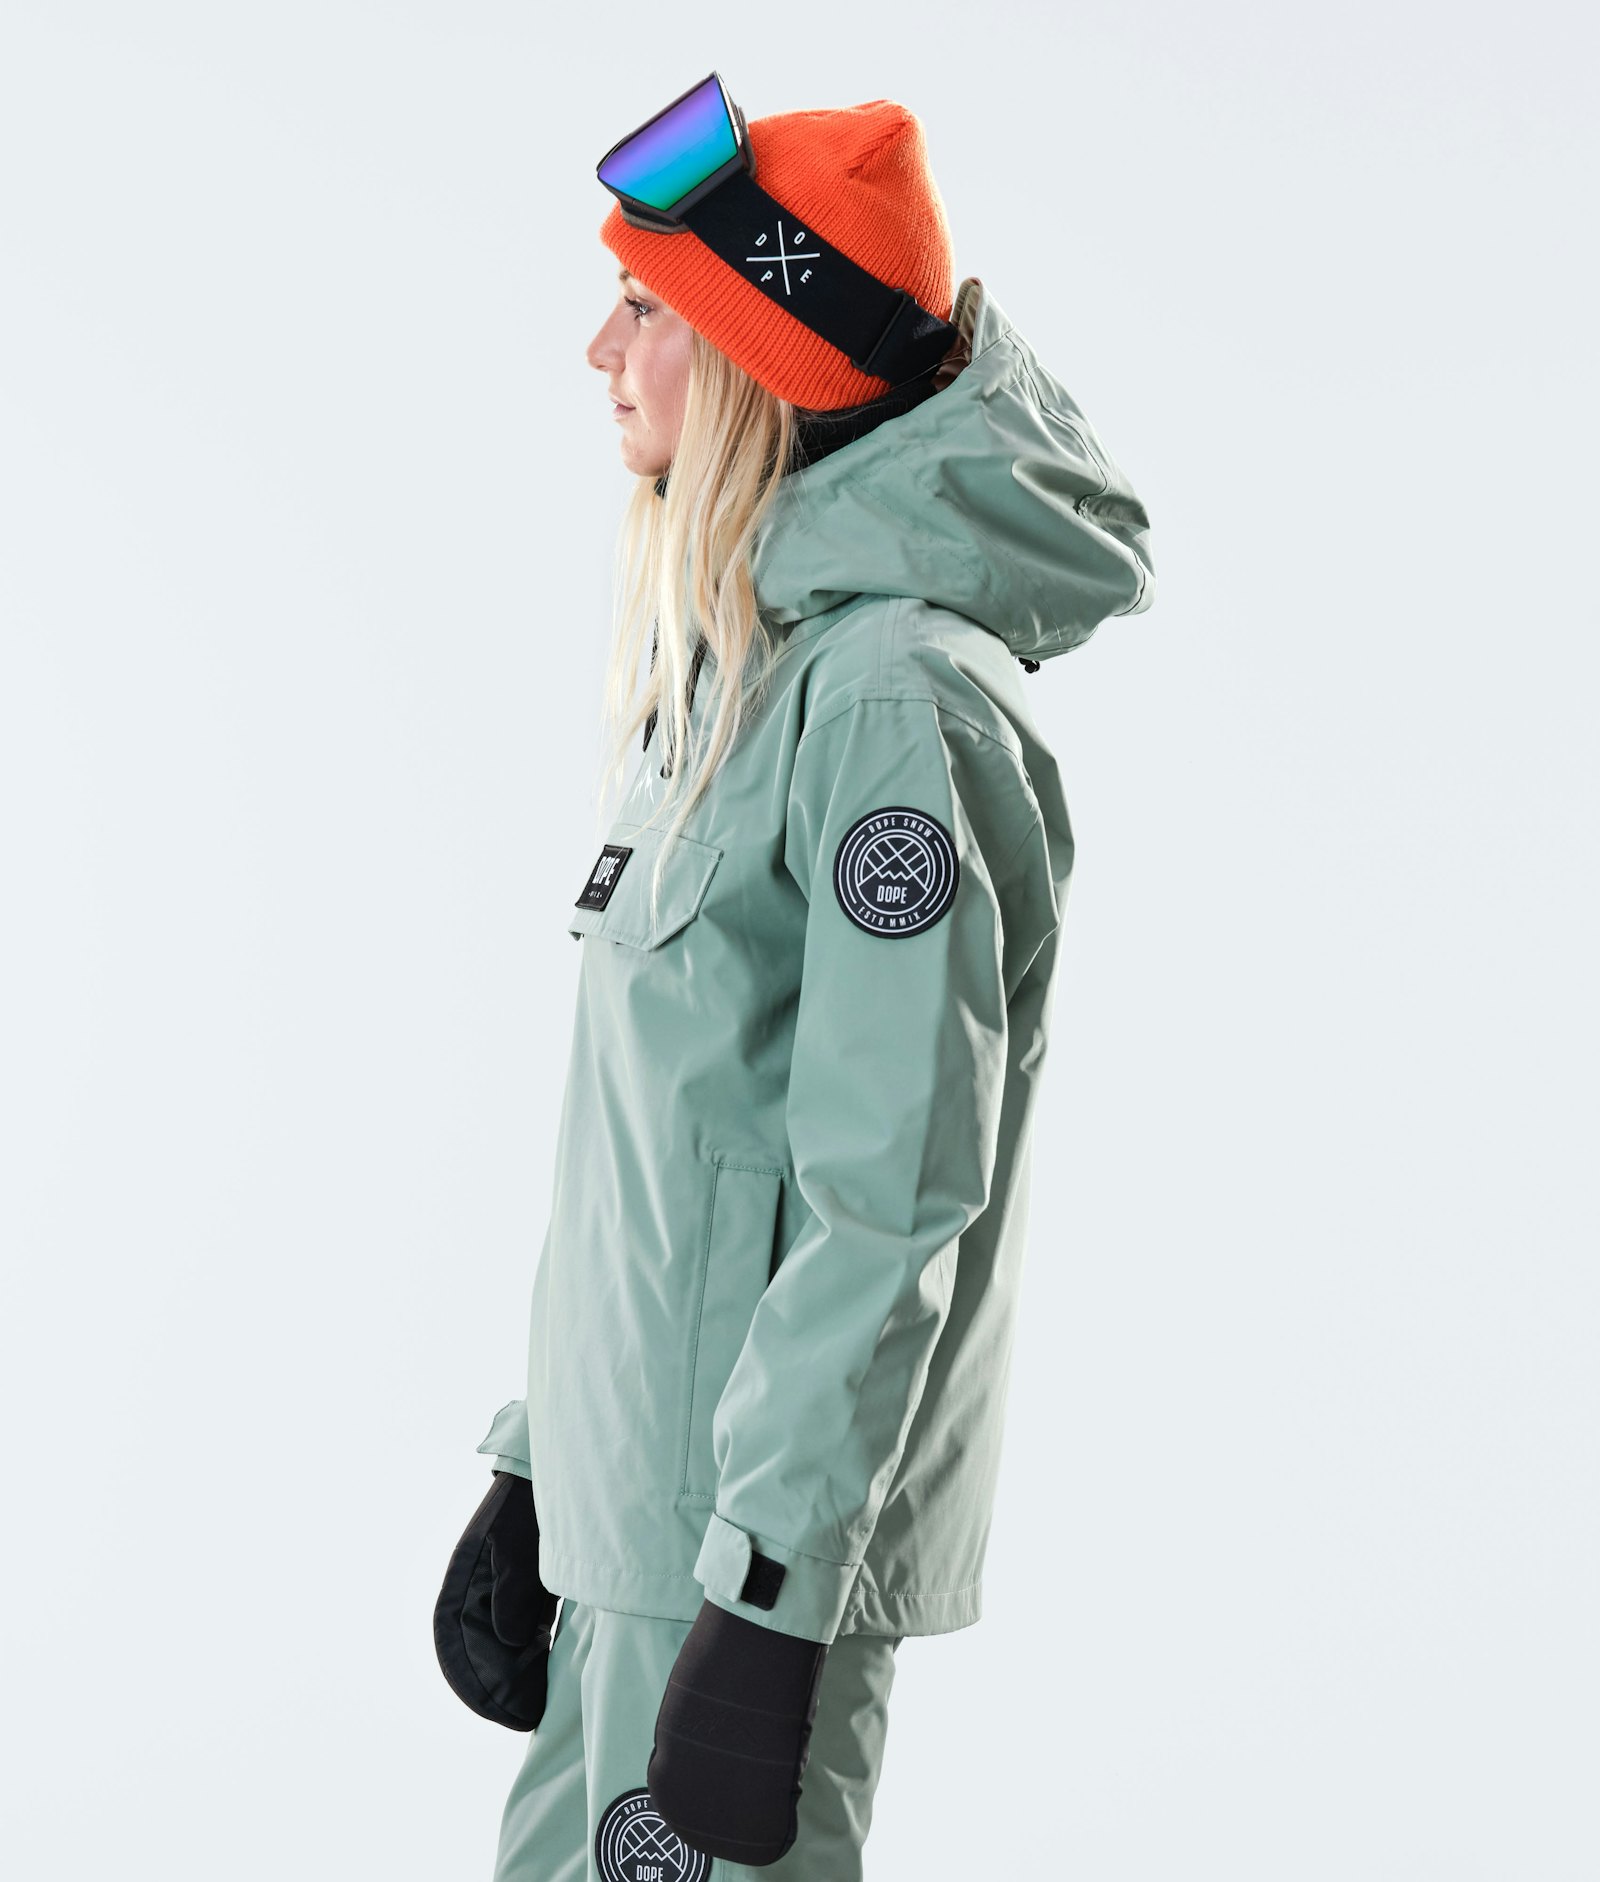 Blizzard W 2020 Snowboard Jacket Women Faded Green